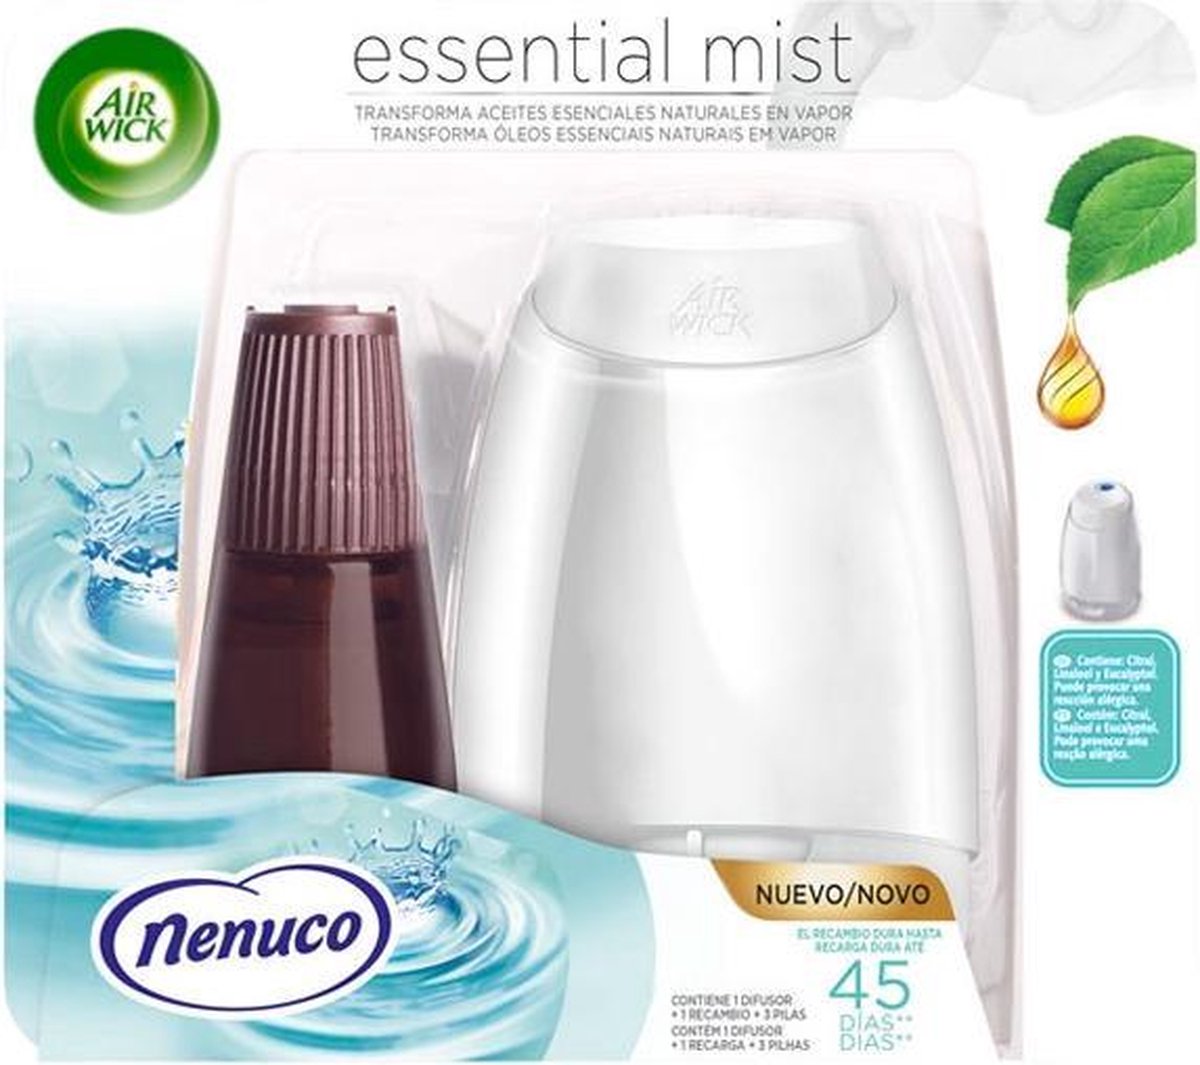 Luchtverfrisser Essential Mist Nenuco Air Wick